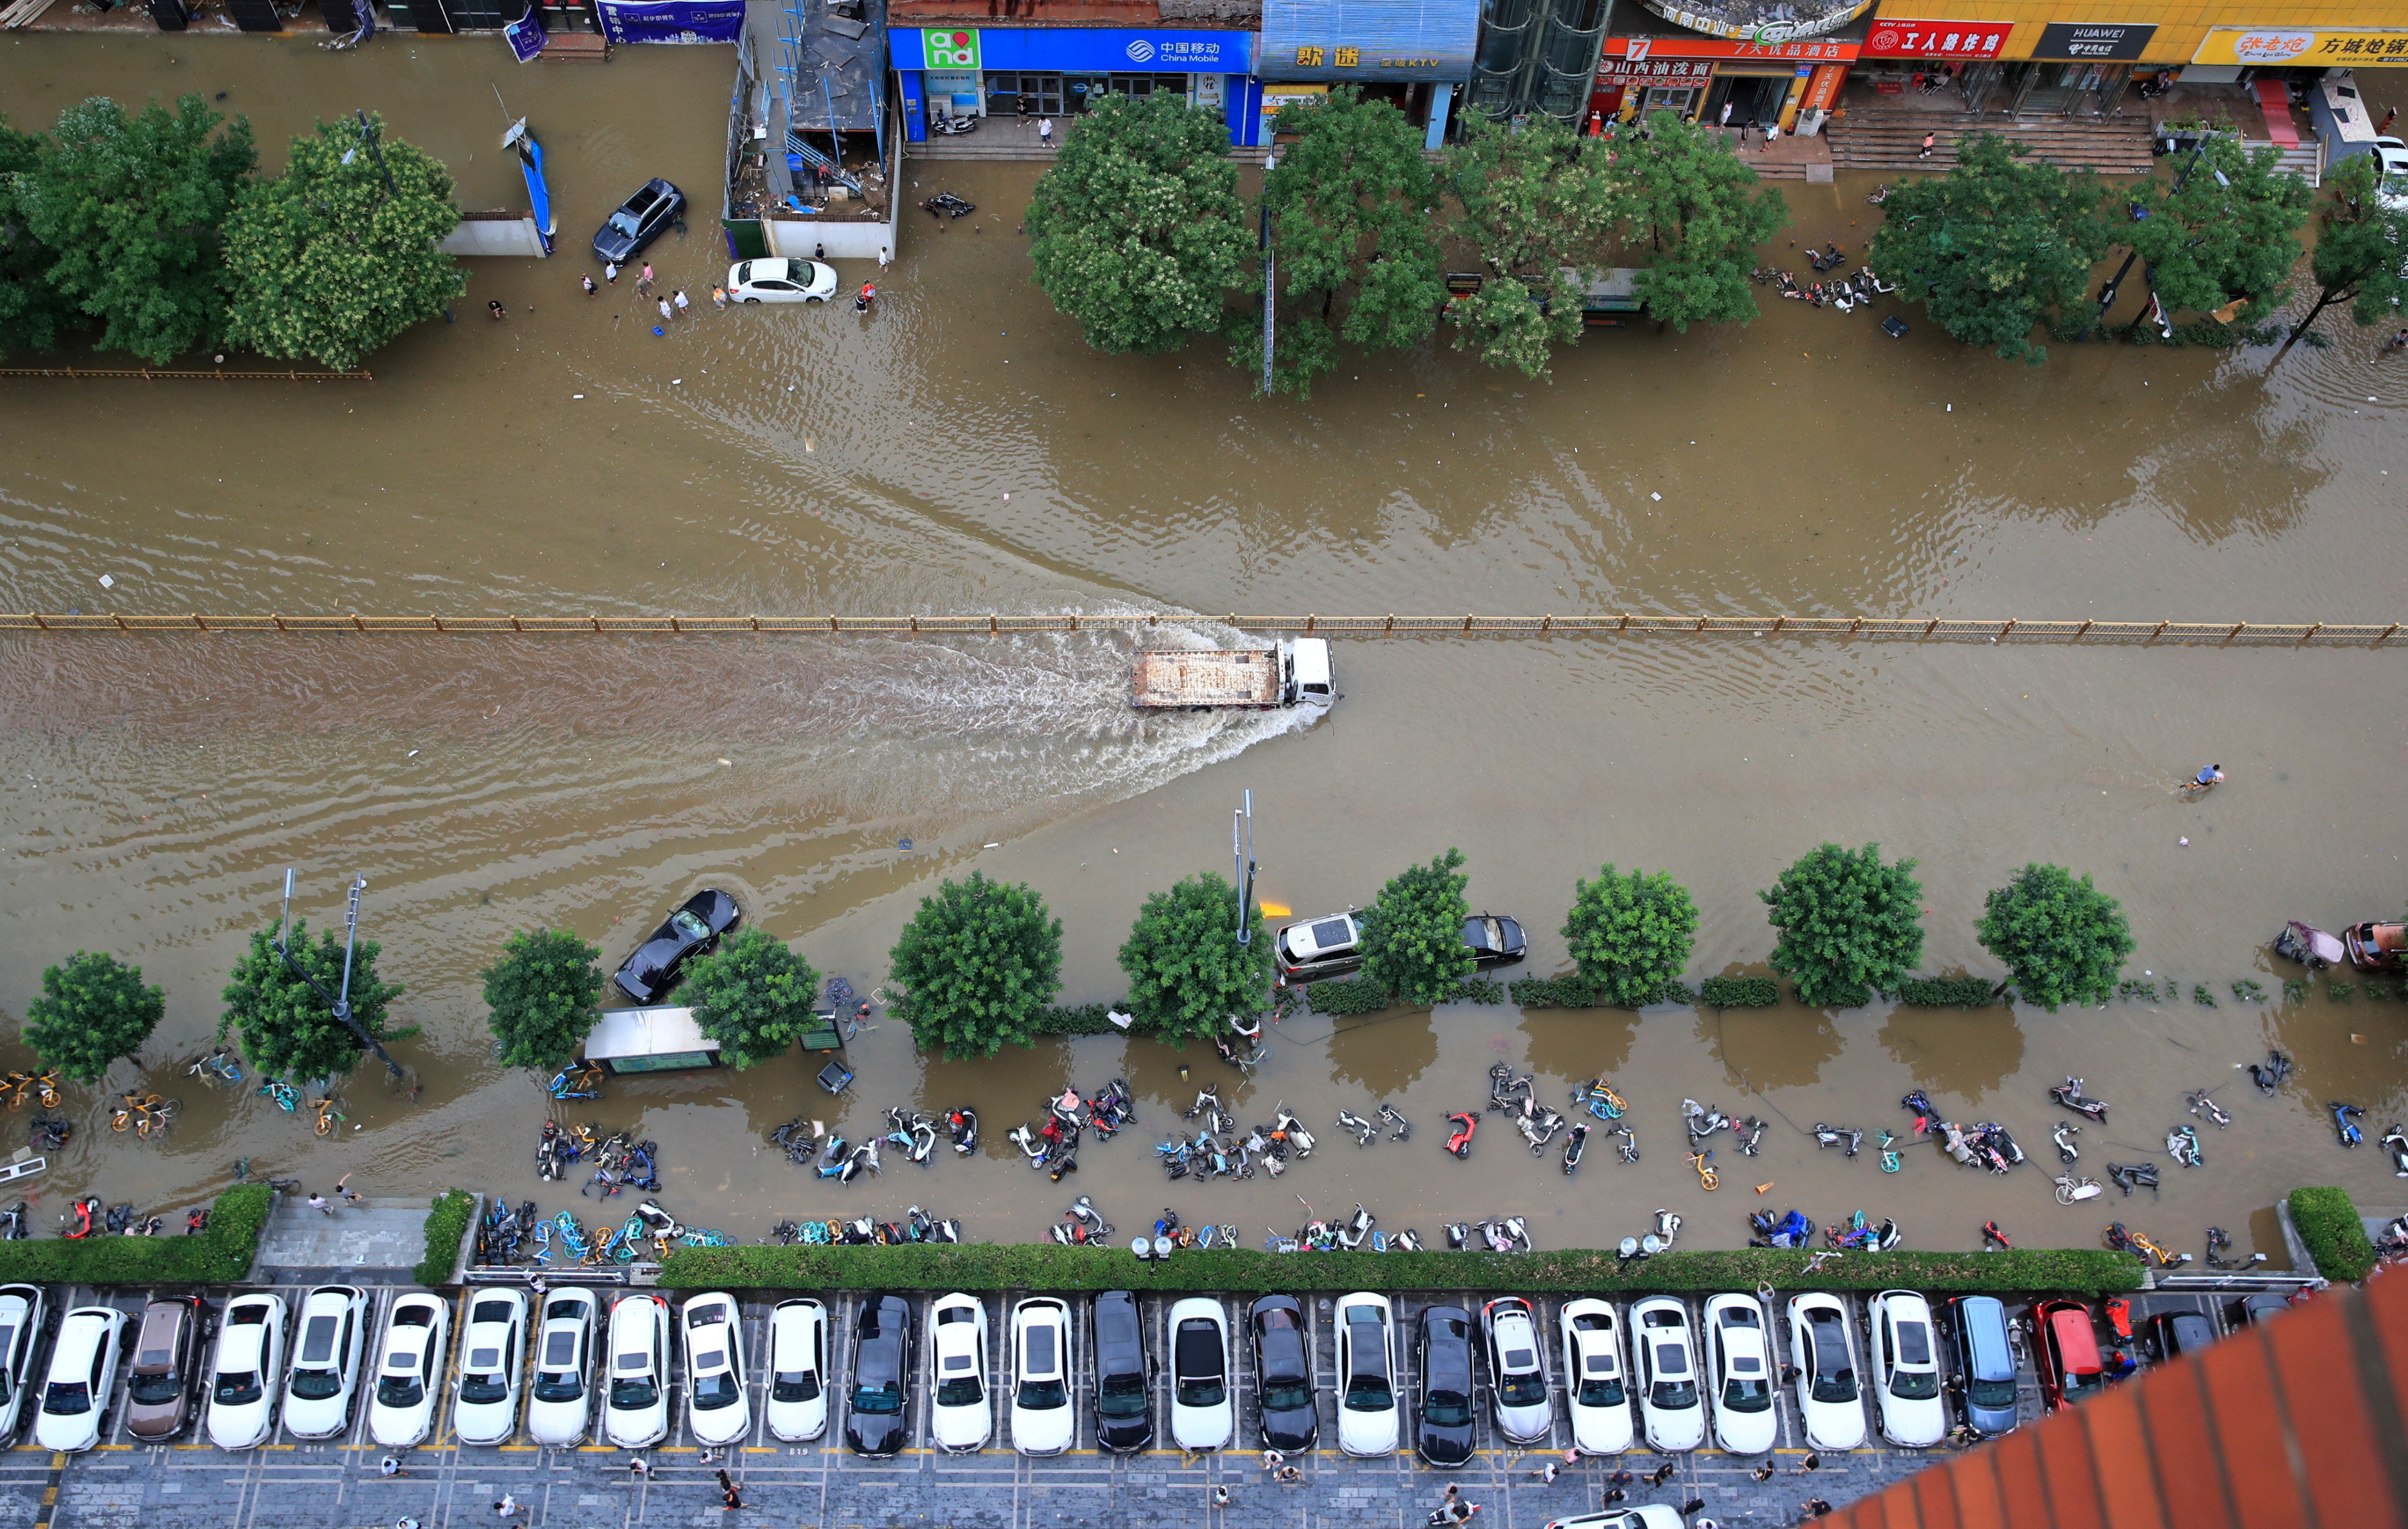 鄭州,極端氣候,西歐,洪水,河南省,供應鏈,iPhone,富士康,地鐵,淹水